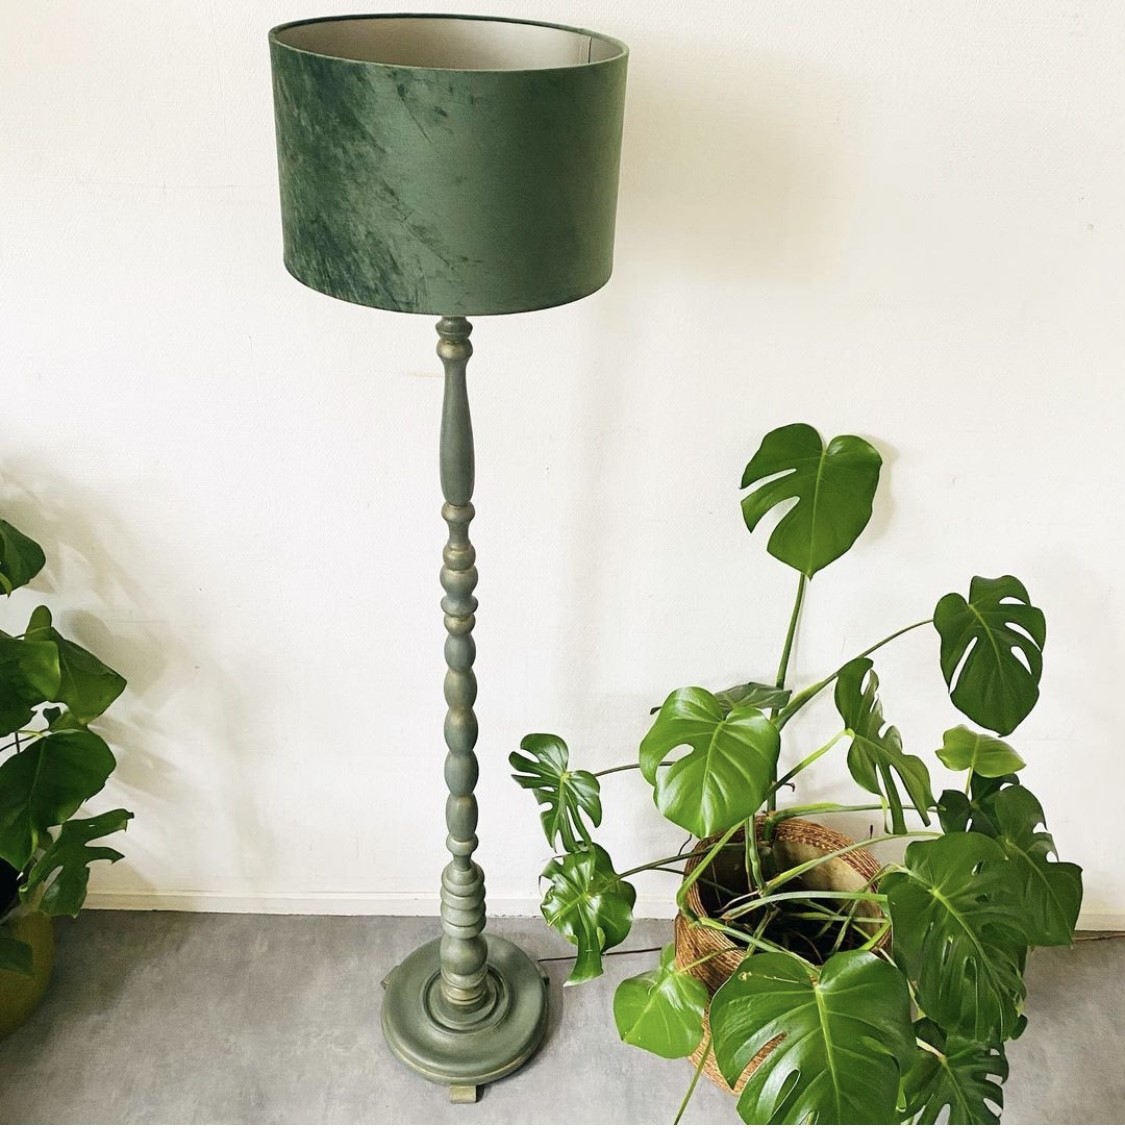 Blaast op Cyclopen Pessimistisch Brocante staande lamp hout groen krijtverf | Woodstock design | Vintage